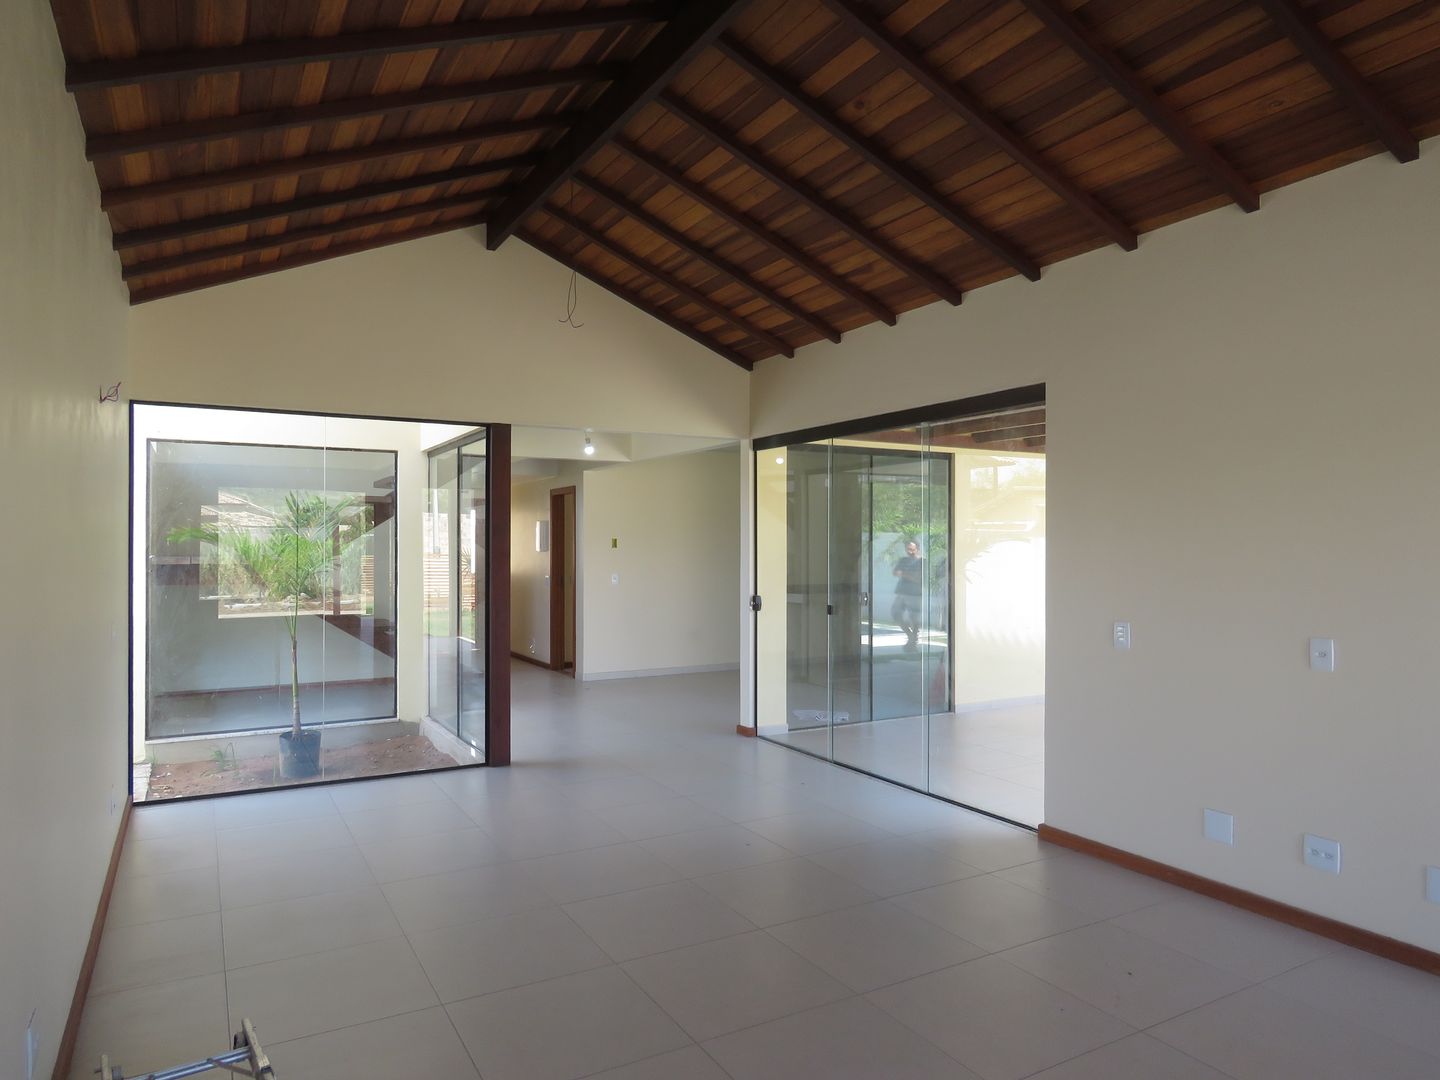 Interior da Casa Caravelas Aroeira Arquitetura Salas de estar tropicais integração,integrada,varanda,sala,sala de jantar,cozinha,forro de madeira